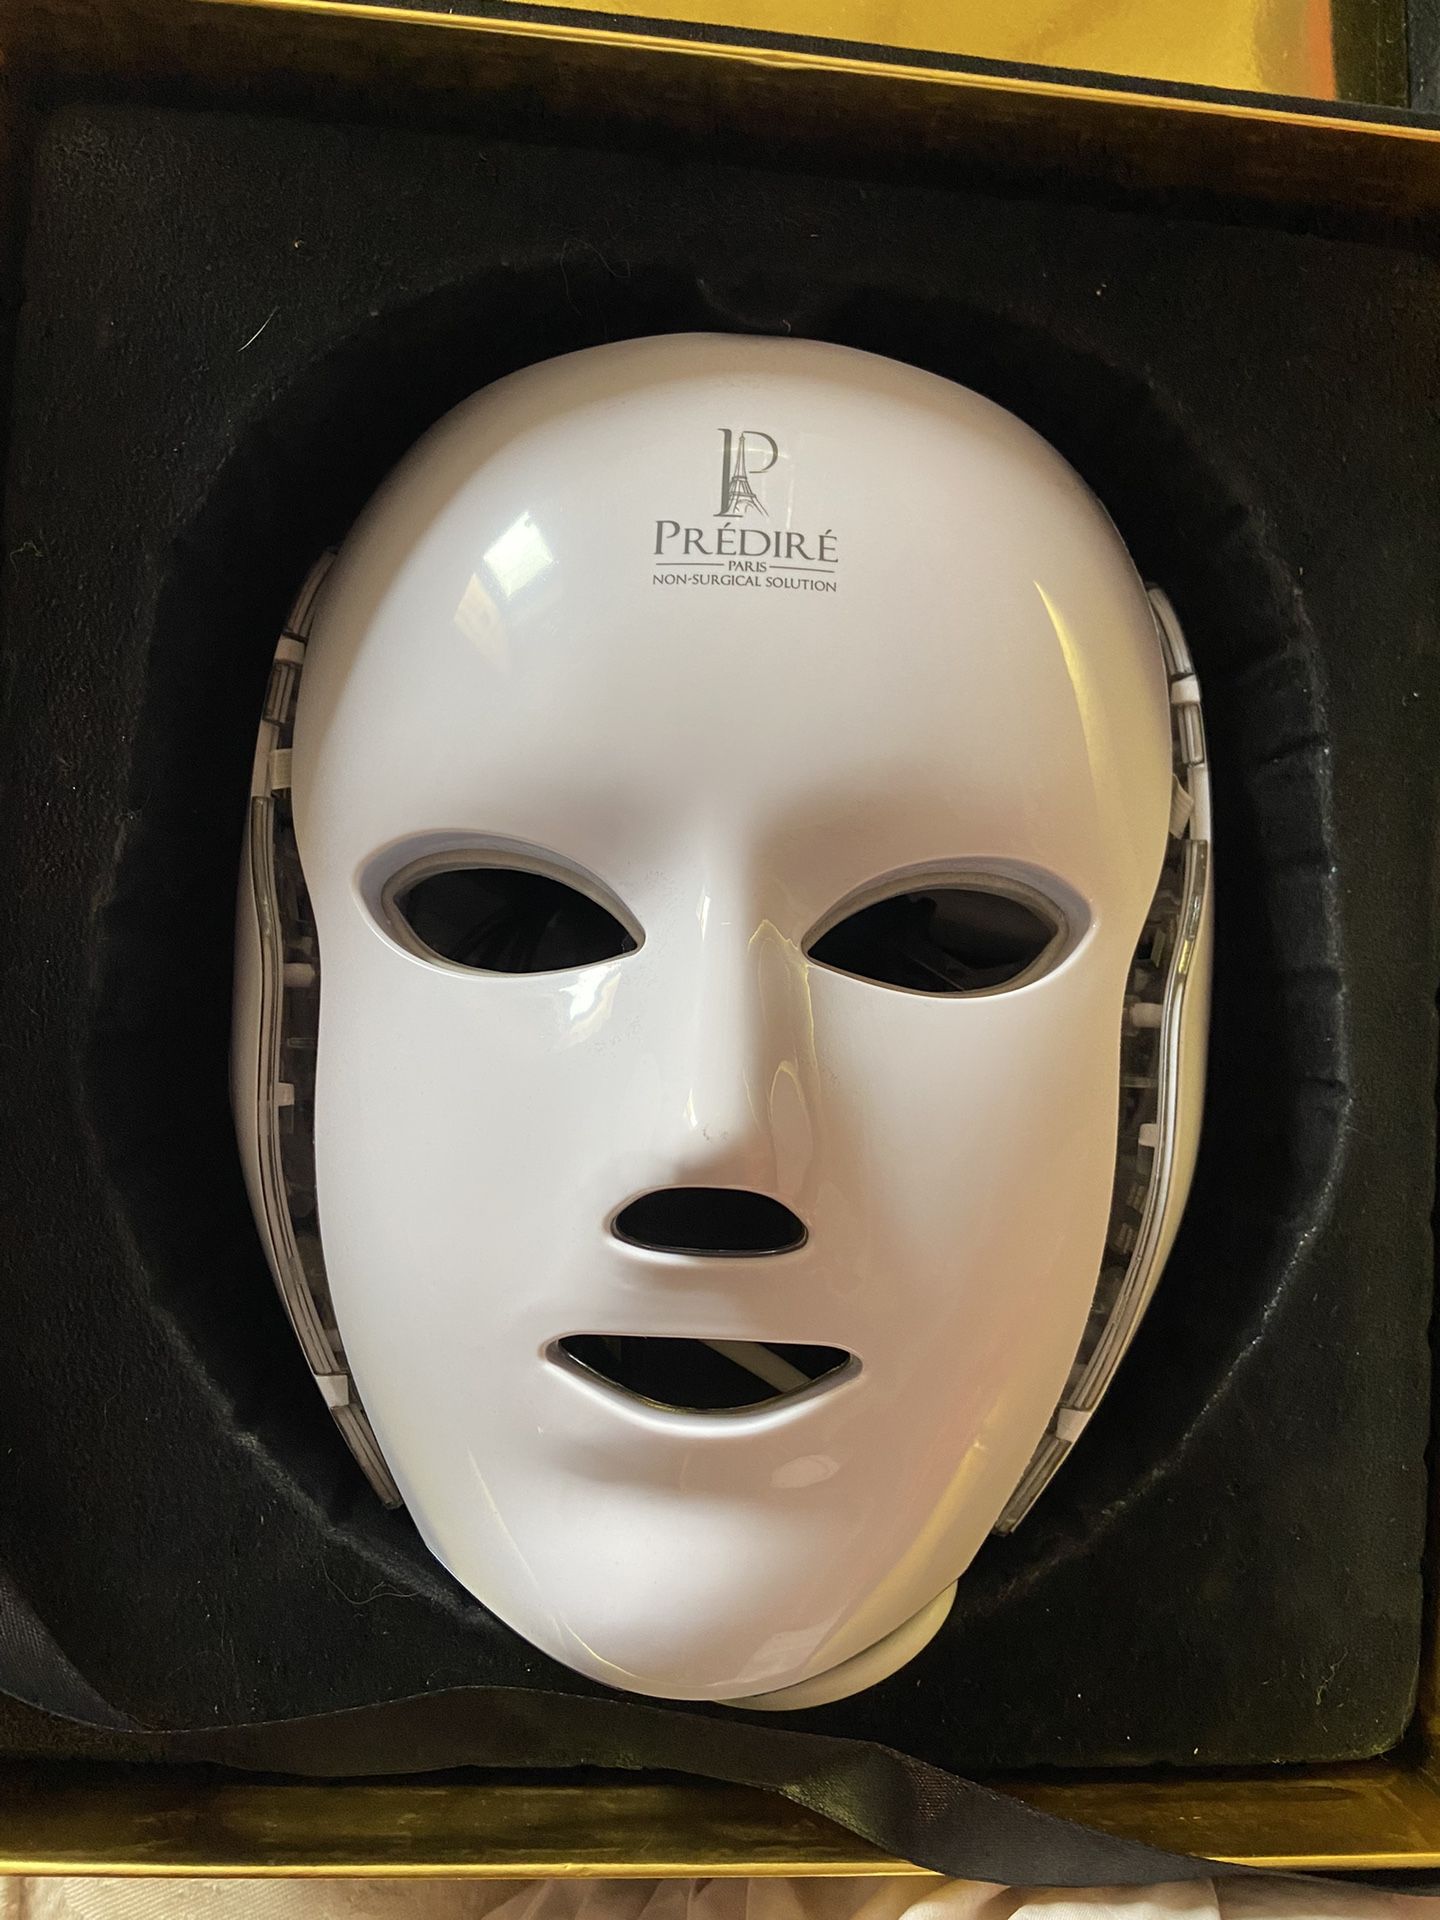 Predire Multi Purpose Skincare Mask